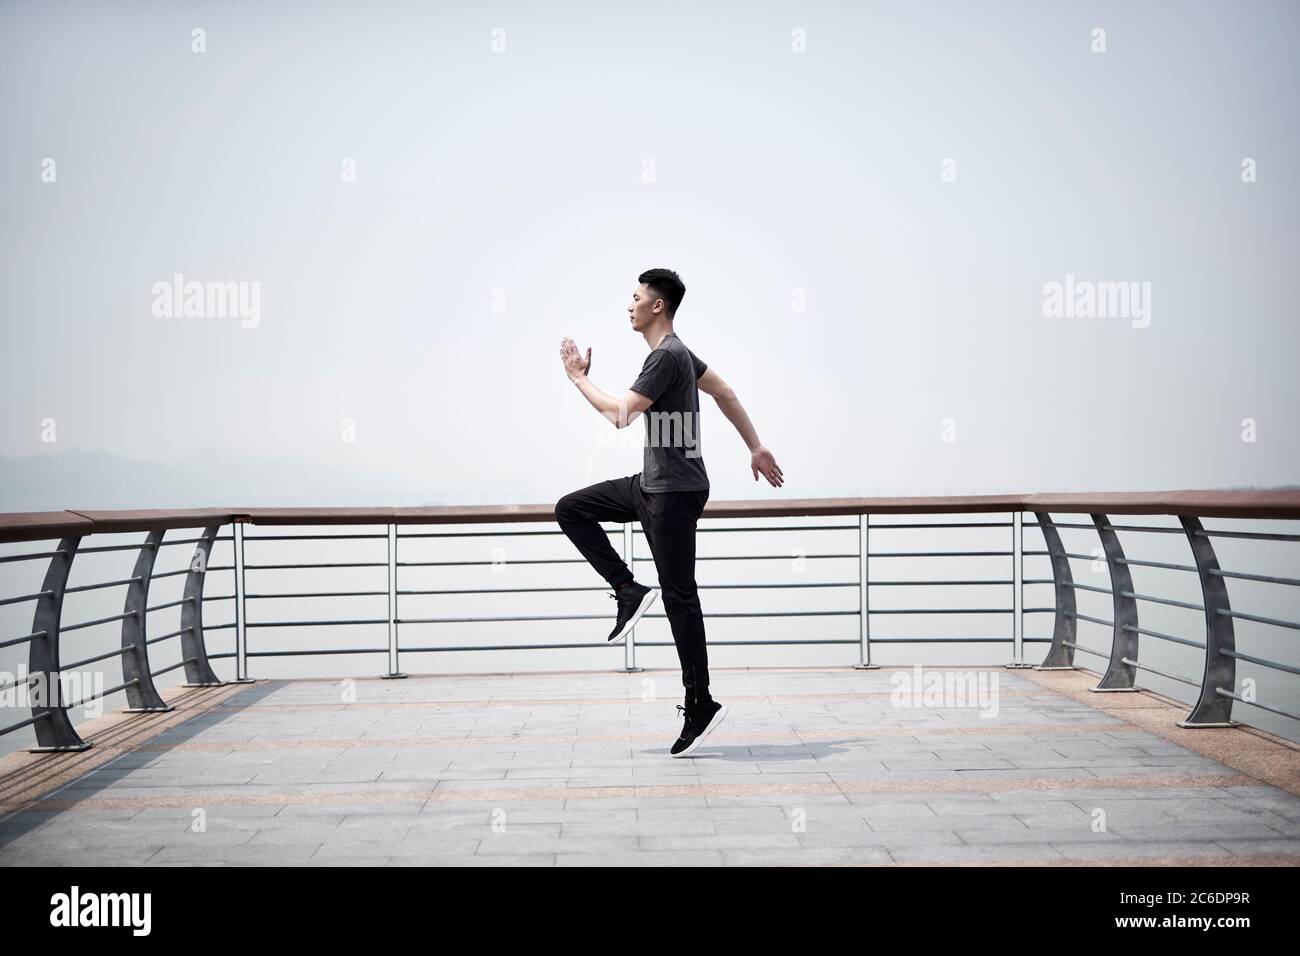 jeune homme adulte asiatique s'exerçant à l'extérieur au bord de la mer Banque D'Images